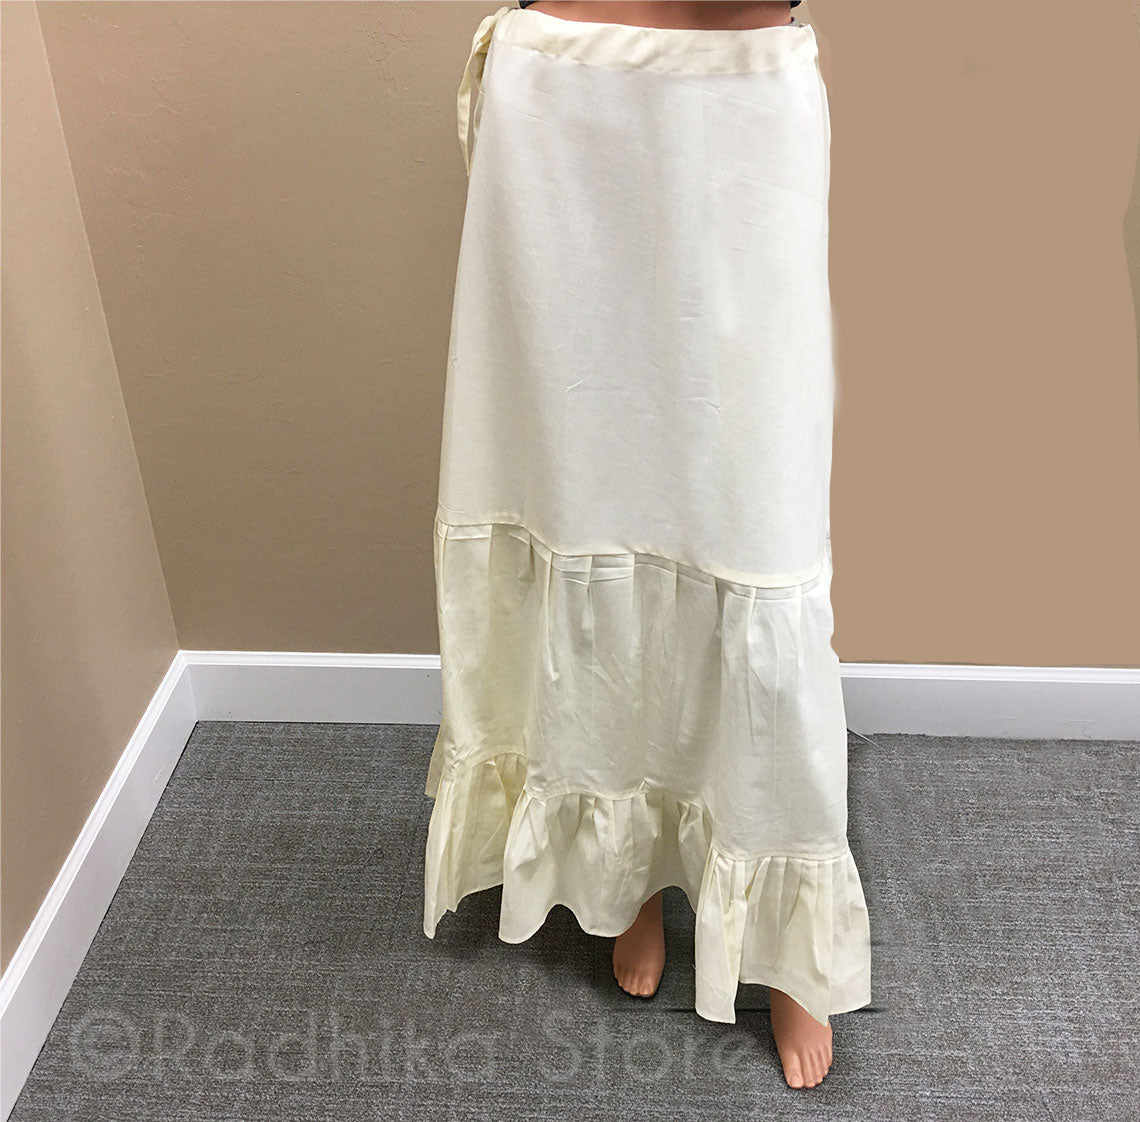 Details 217+ petticoat slip skirt super hot